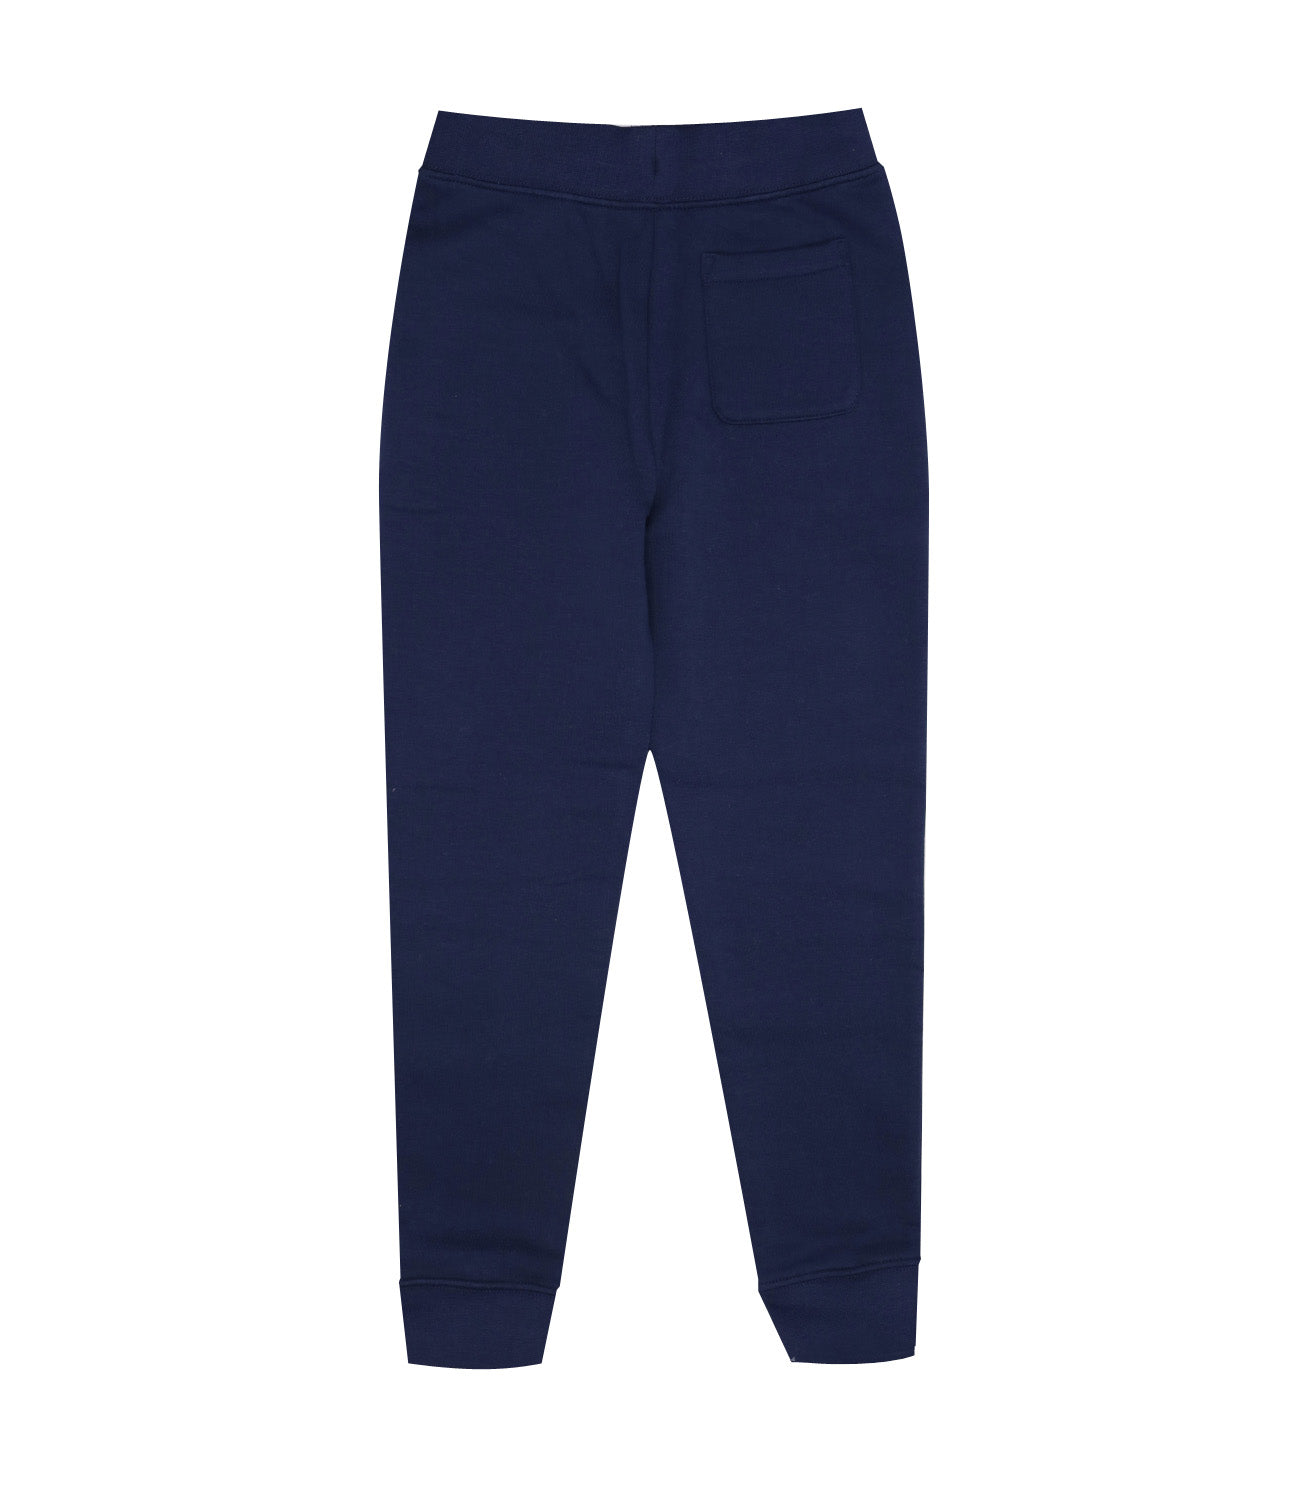 Ralph Lauren Childrenswear | Blue and Bordeaux Sports Pants